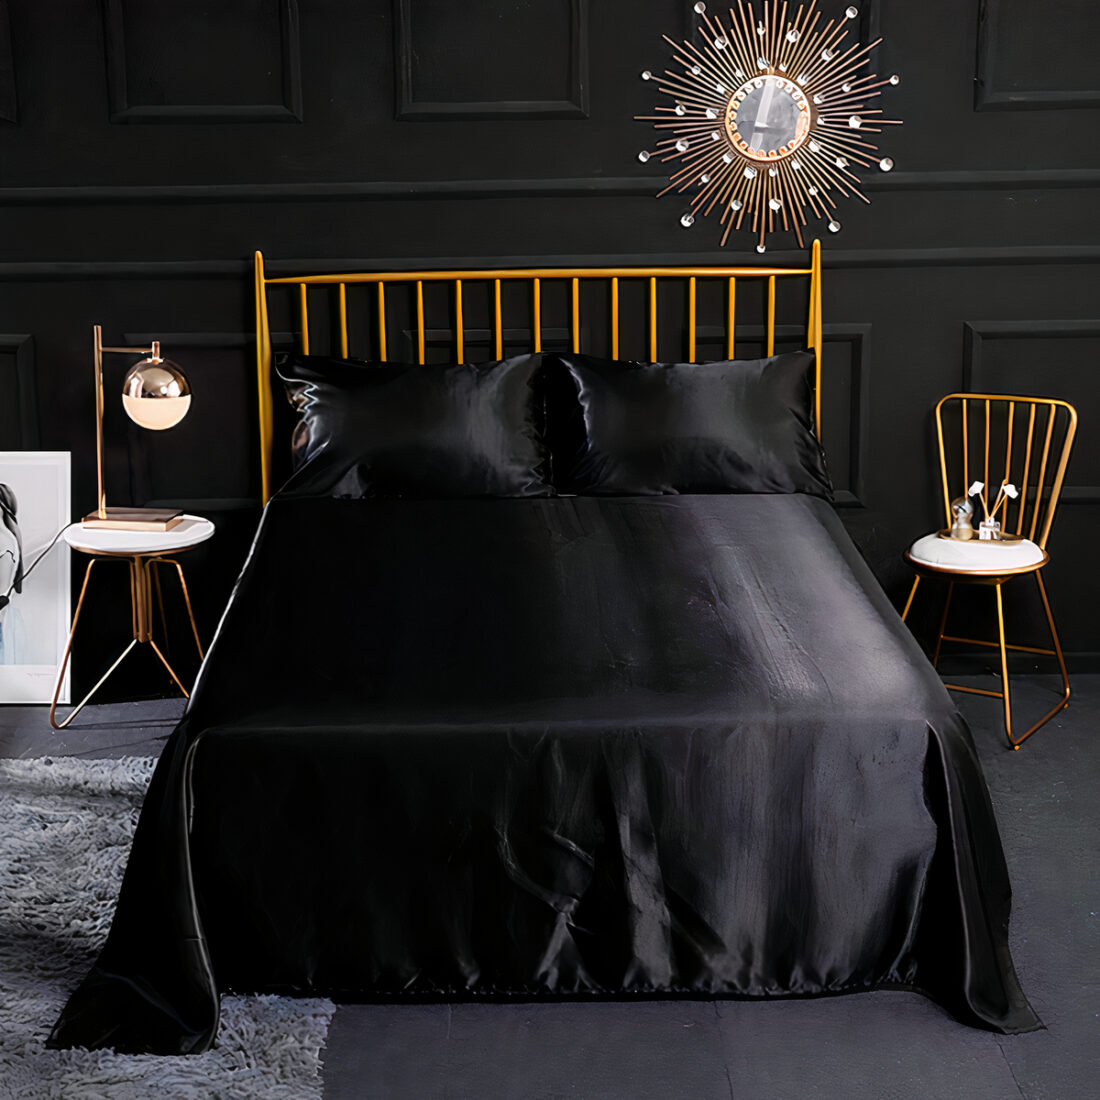 Drap en satin noir sur un lit double avec 2 coussins assortis, tête de lit barreaux dorés avec chaise à droite assortie et table de chevet à gauche, un tapis gris à gauche du lit. mur noir et miroir en forme de soleil au dessus du lit.